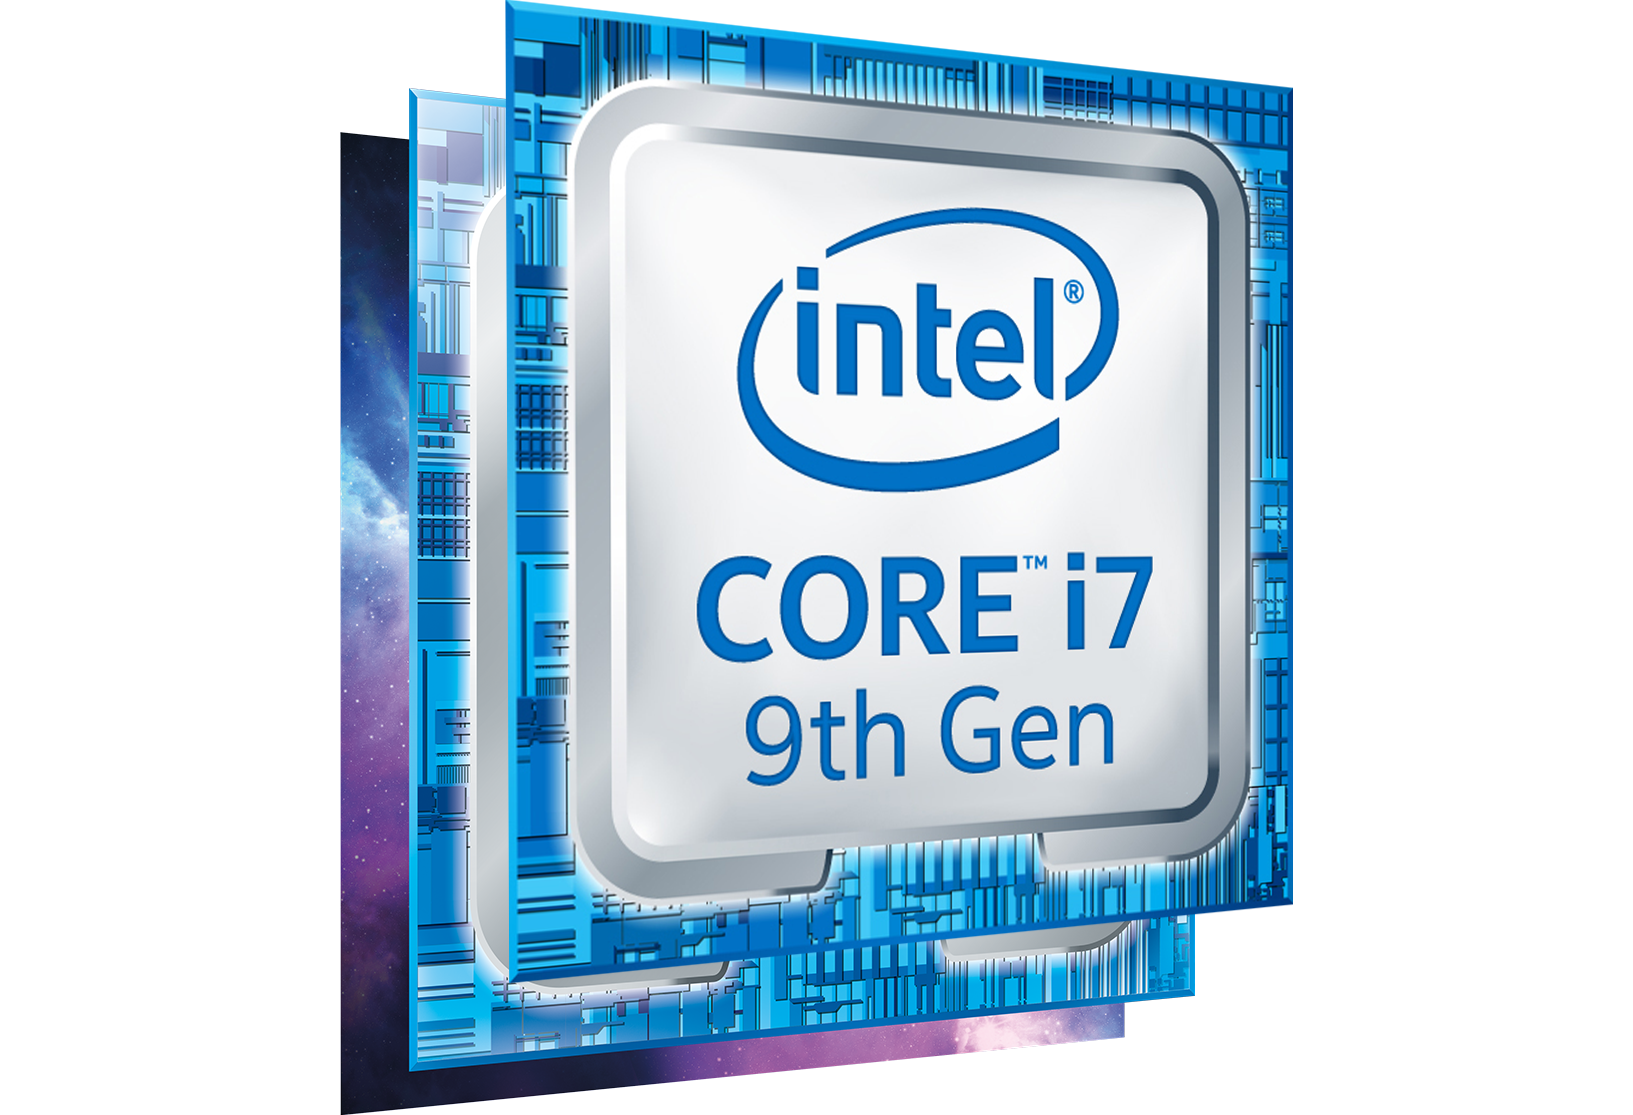 Intel Core I7 9700k Unlocked 9th Gen Desktop Processorcpu Oem Ln94098